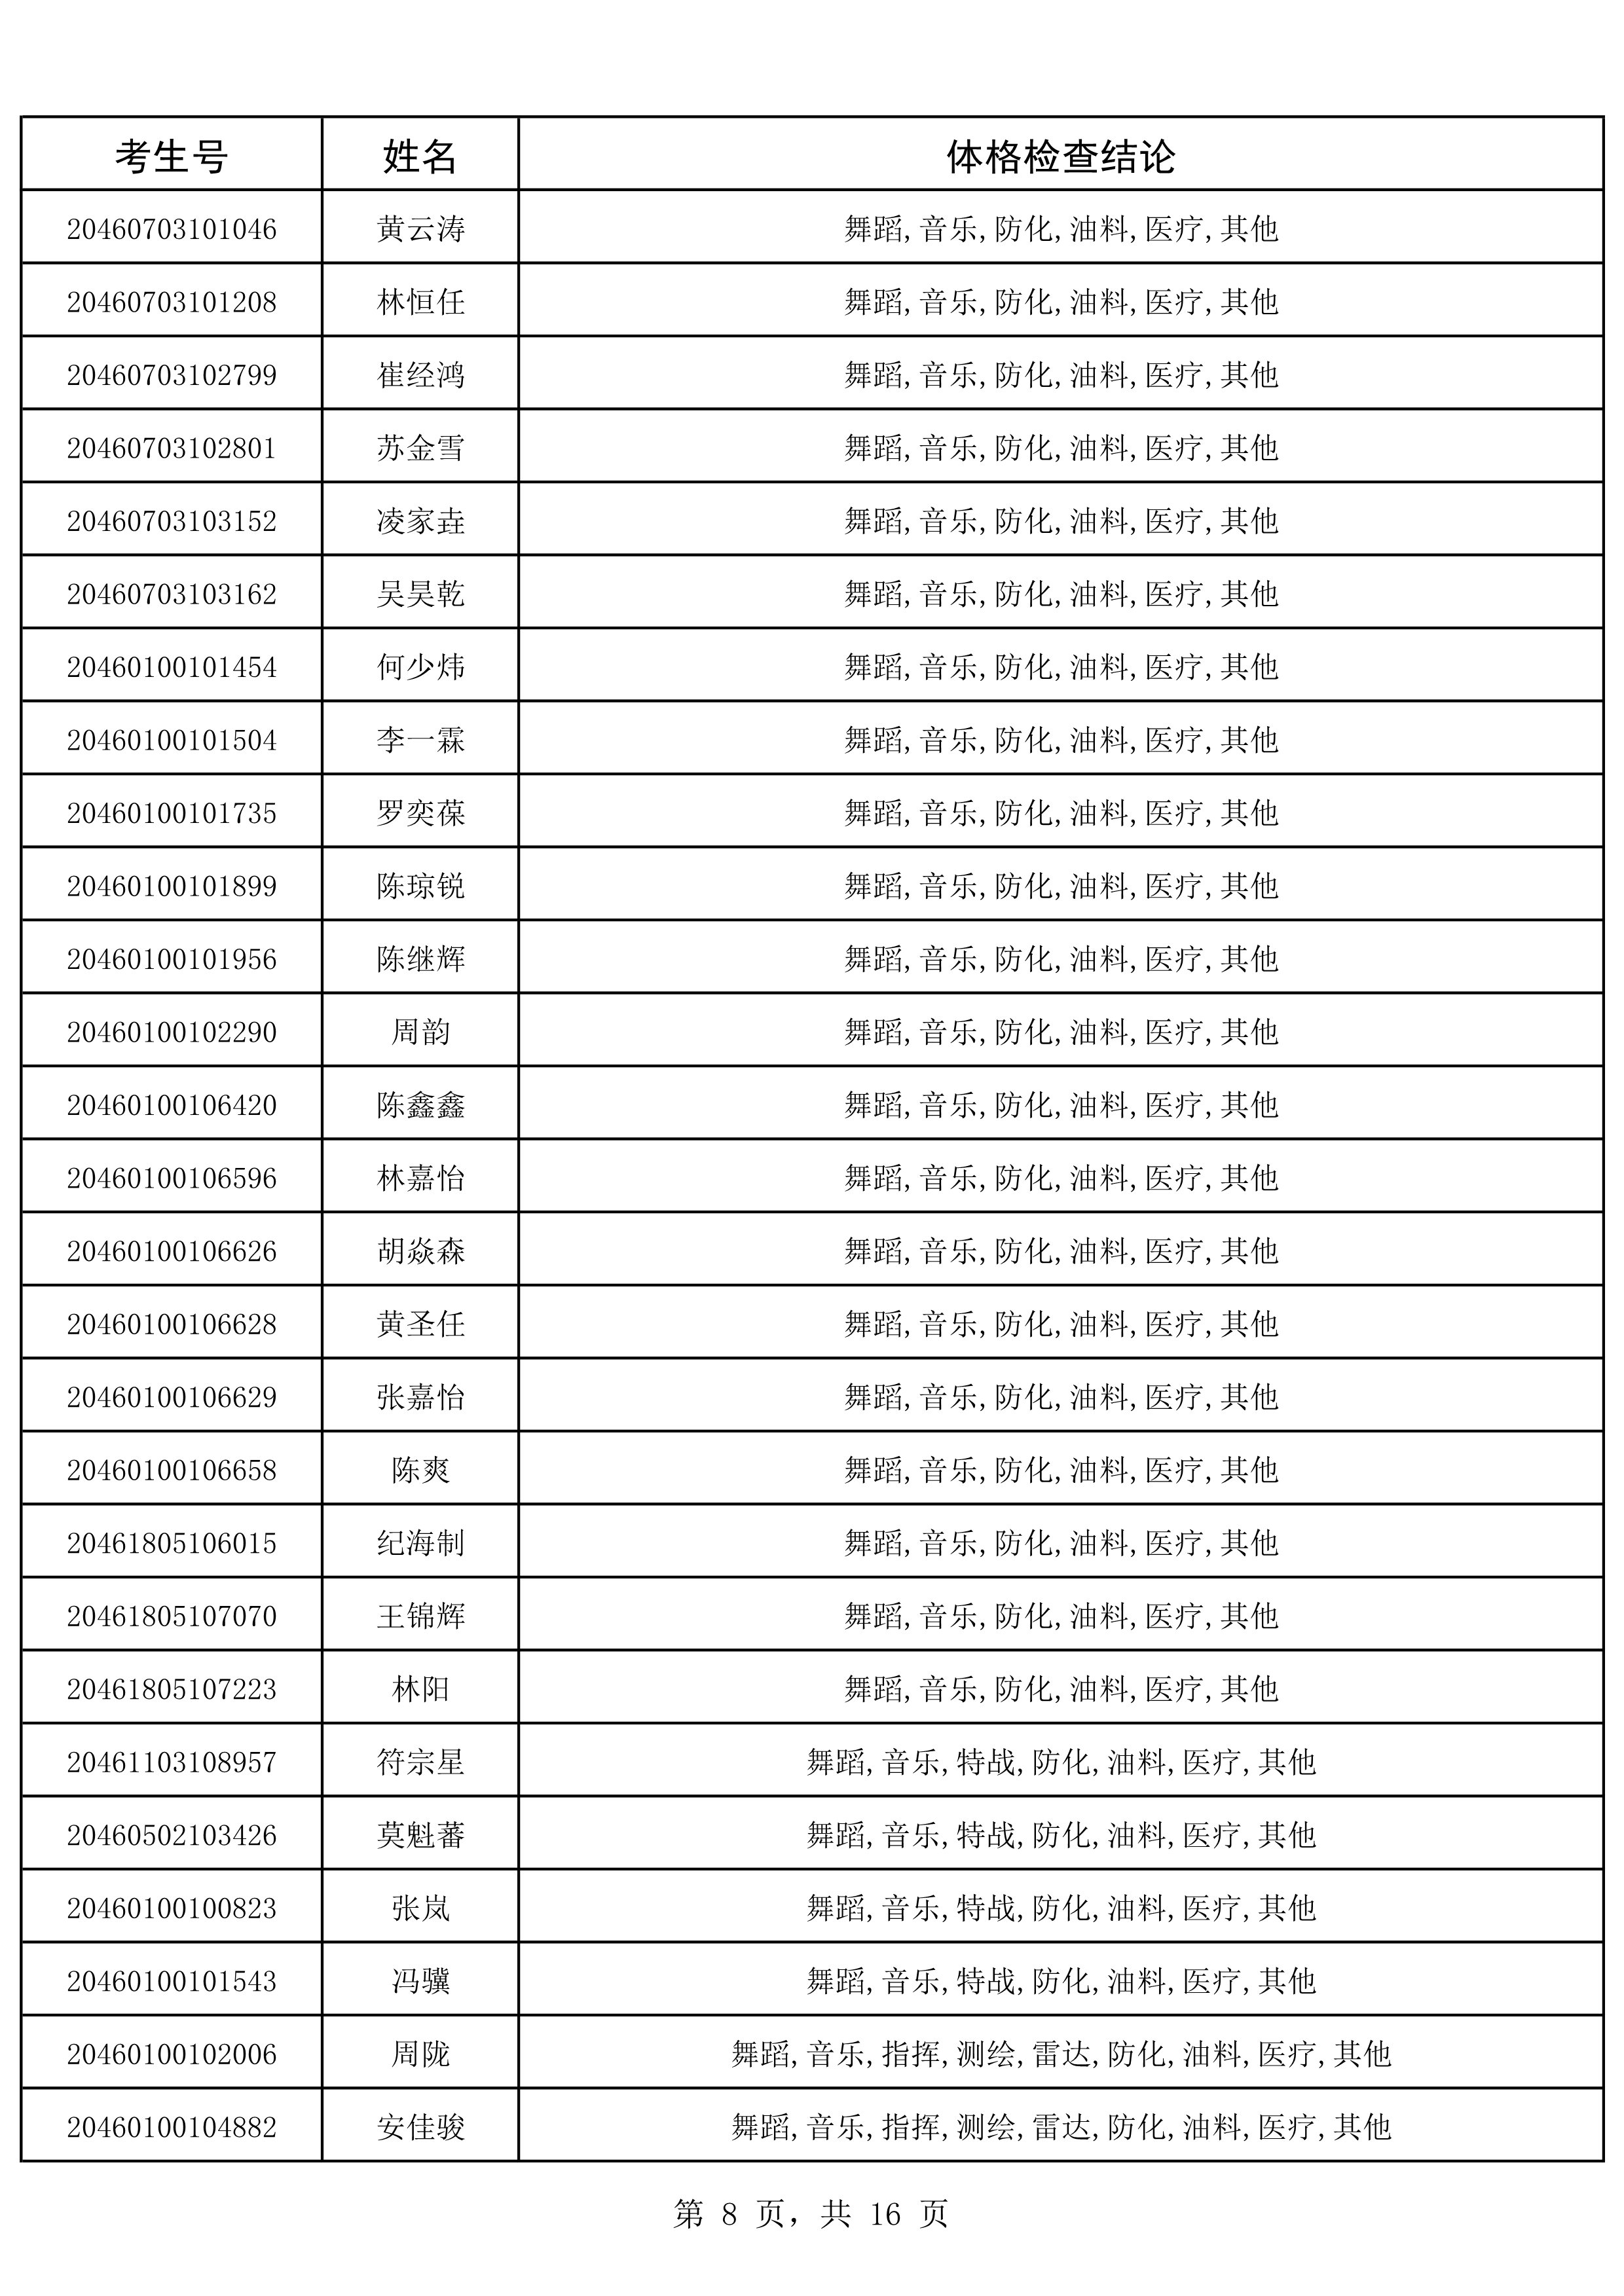 2020年海南省军队院校招生政治考核、军检合格考生名单_8.png